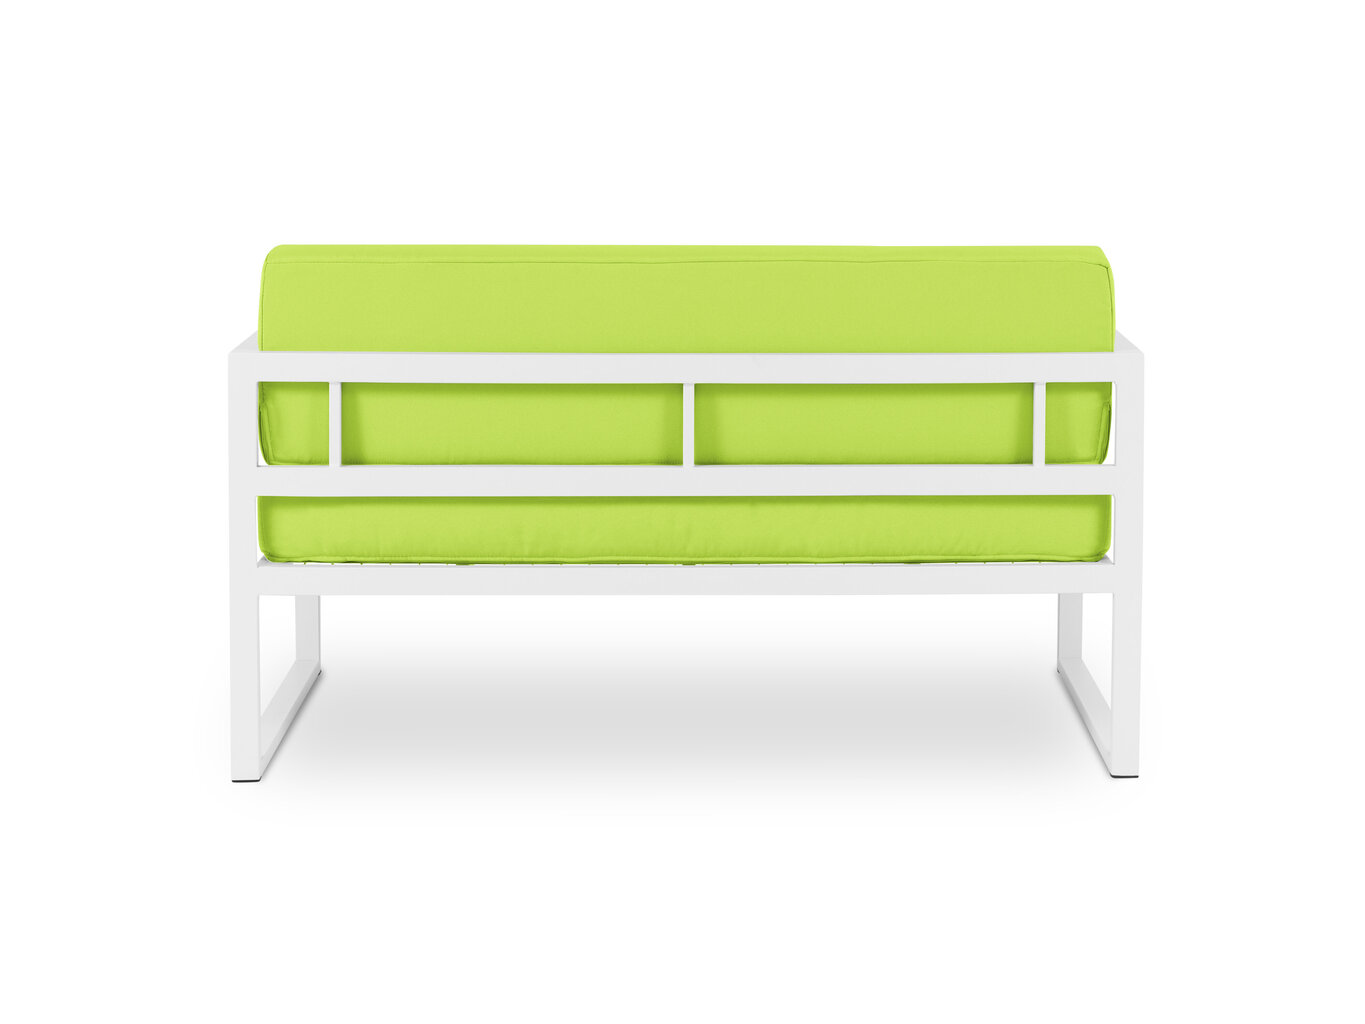 Divvietīgs āra dīvāns Calme Jardin Nicea, gaiši zaļš/balts cena un informācija | Dārza krēsli | 220.lv